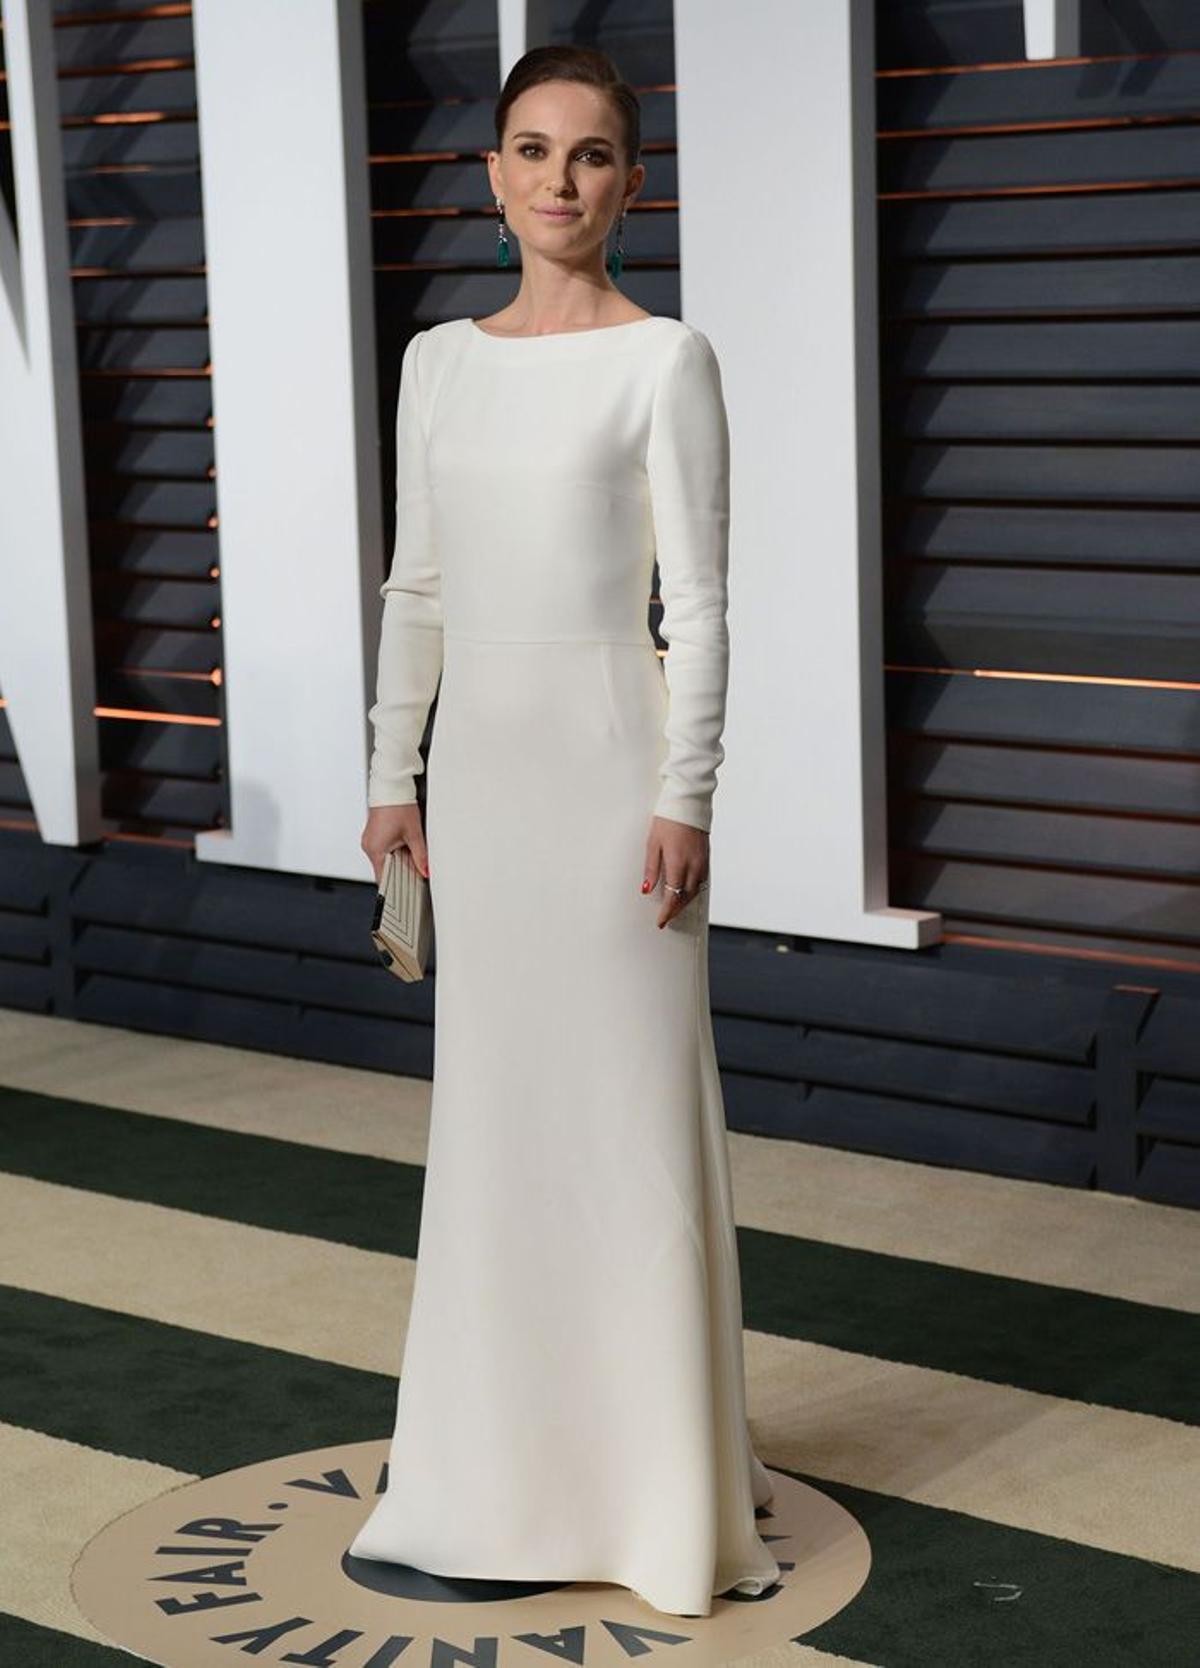 Fiestas Post Oscar 2015, Natalie Portman impresionante con un perfecto vestido blanco